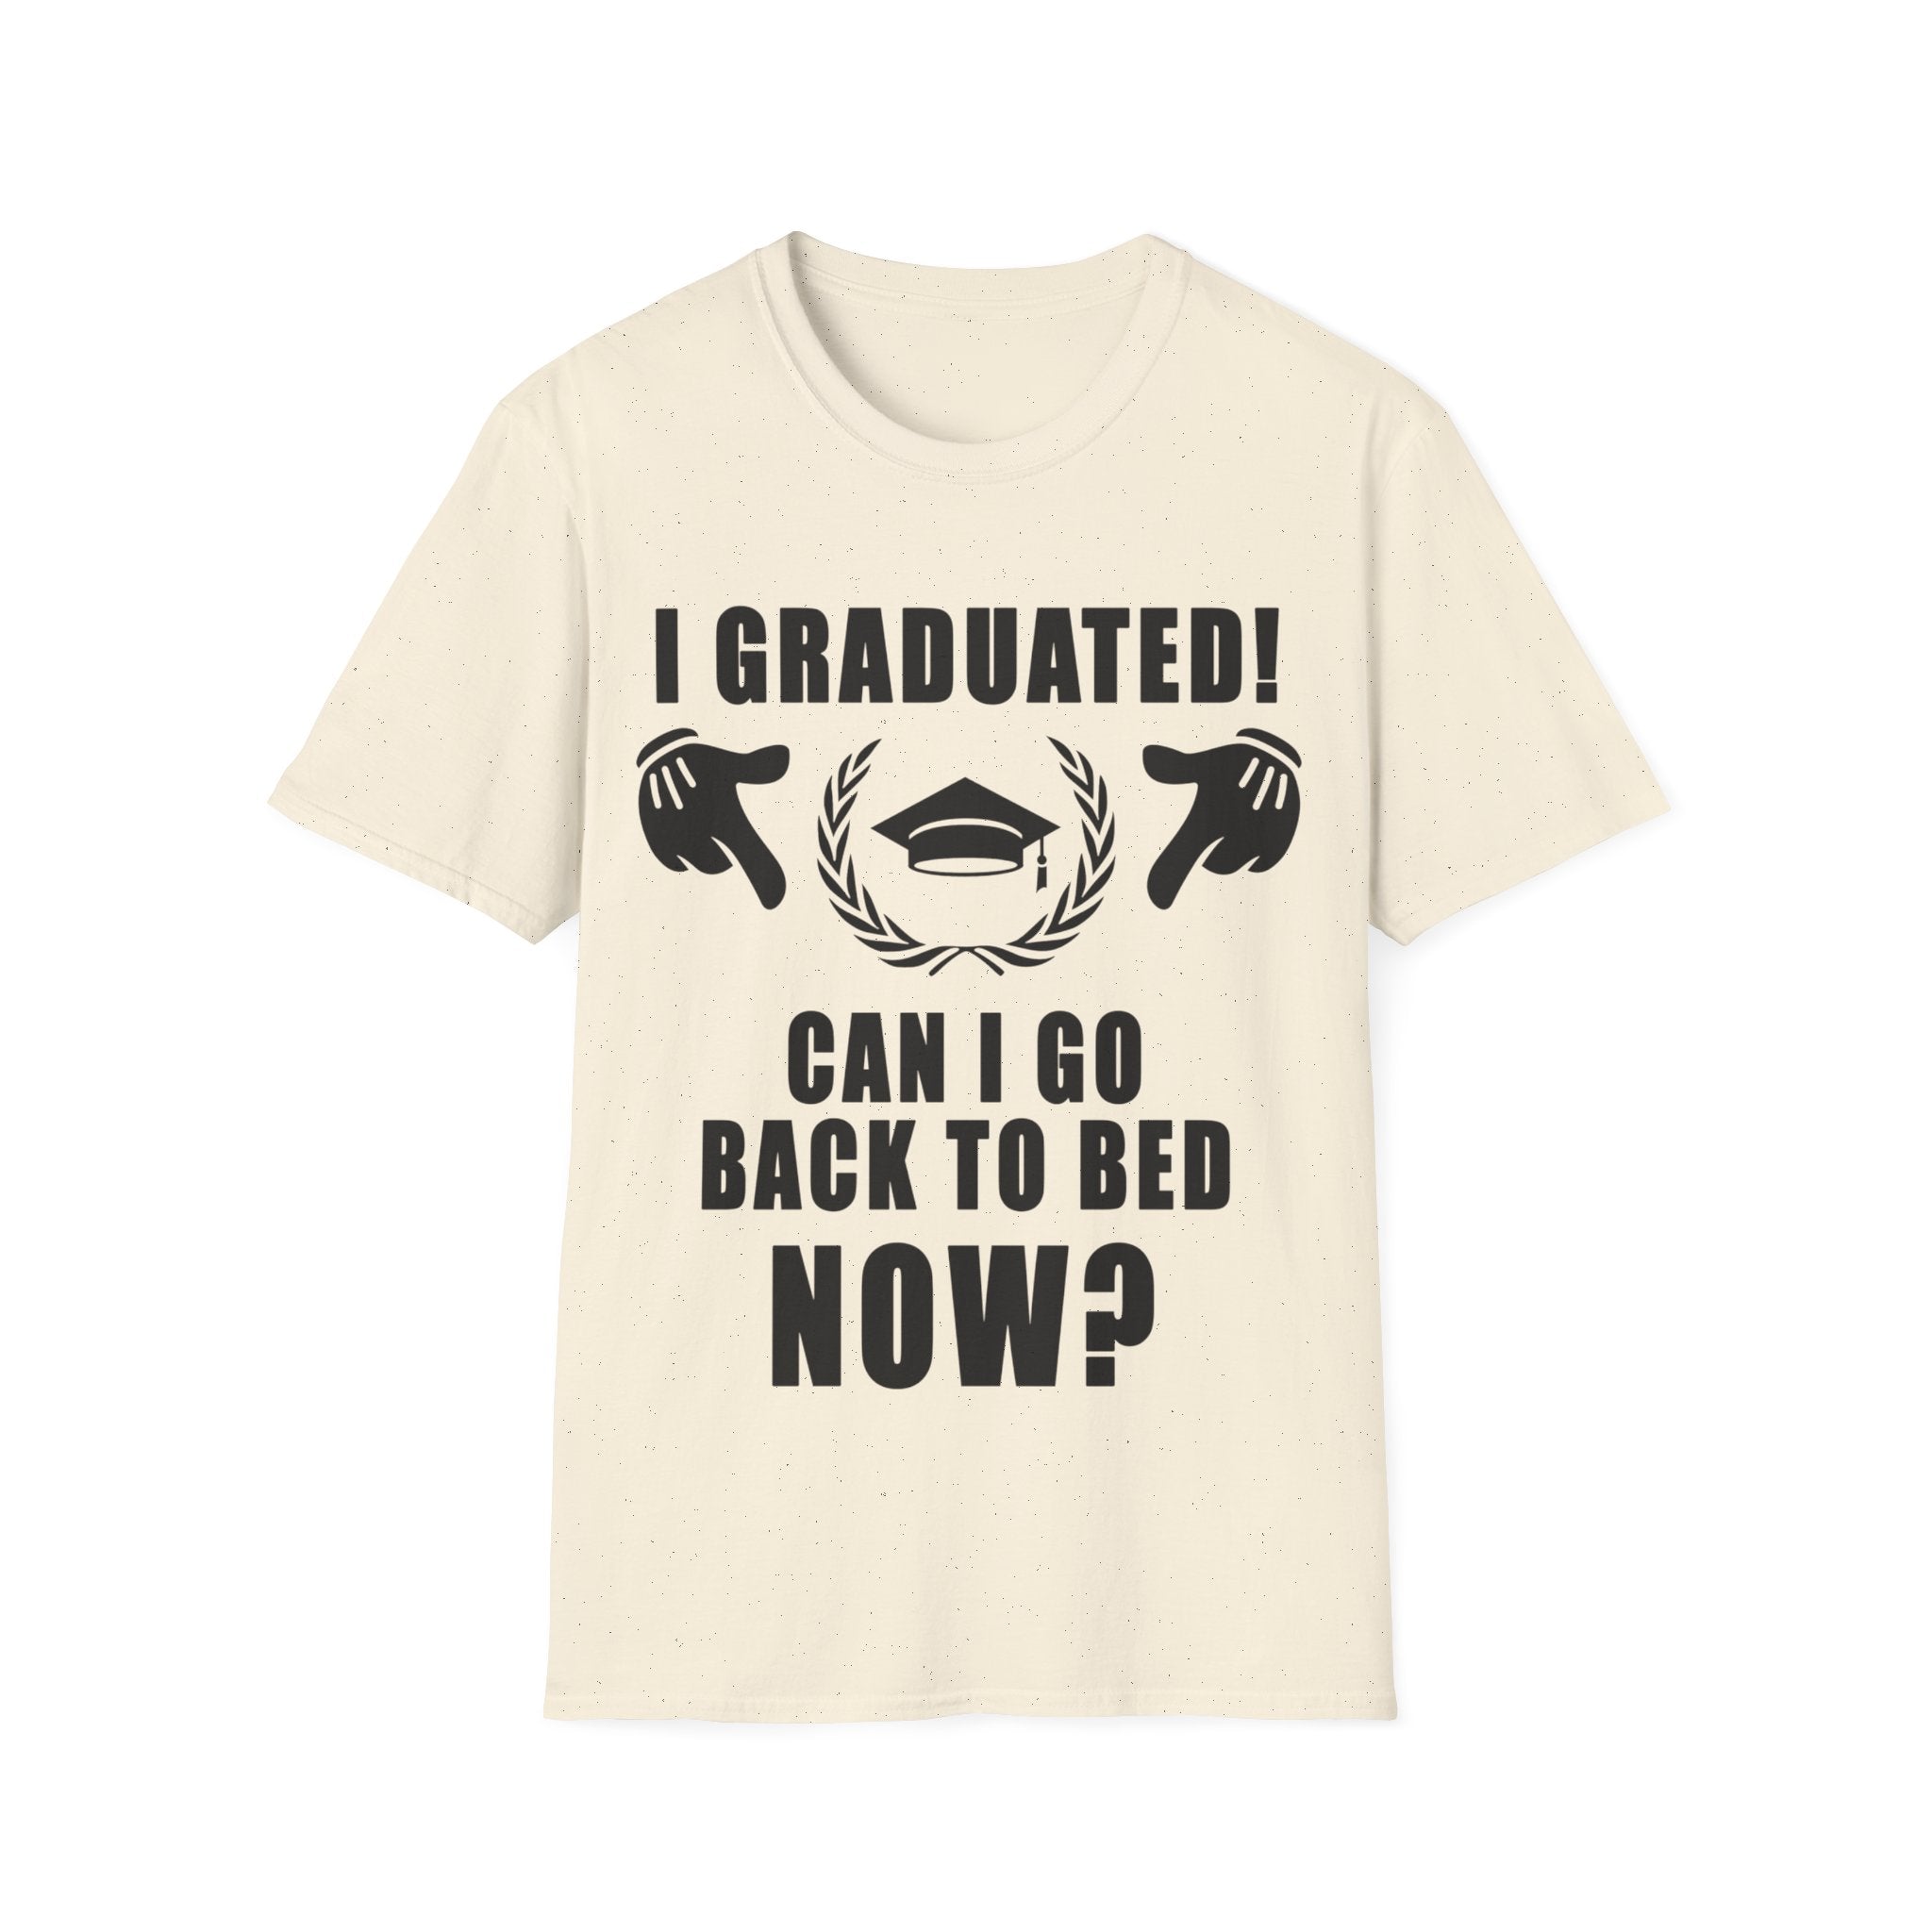 मैंने स्नातक की उपाधि प्राप्त कर ली! क्या मैं अब बिस्तर पर वापस जा सकता हूँ? टी-शर्ट, 2022 स्नातक, 2022 स्नातक, 2022 की वरिष्ठ कक्षा, स्नातक टी स्कूल प्राइड स्कूल - प्लसमिनस्को.कॉम